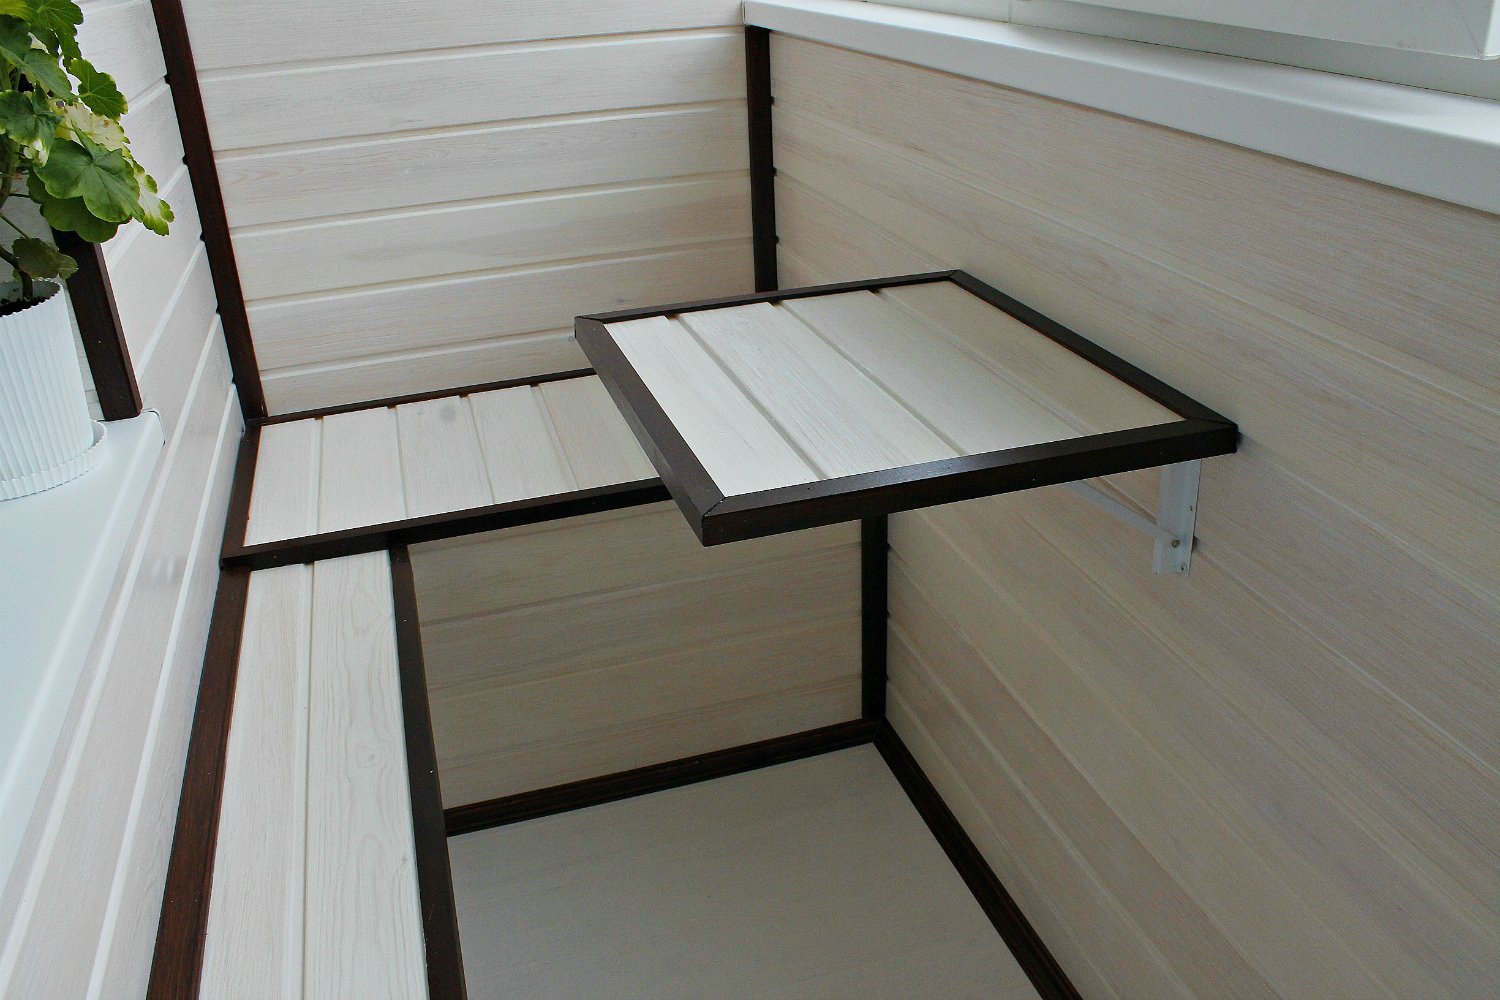 Откидной стол для балкона 600х400 Столешница ЛДСП толщиной 26 мм